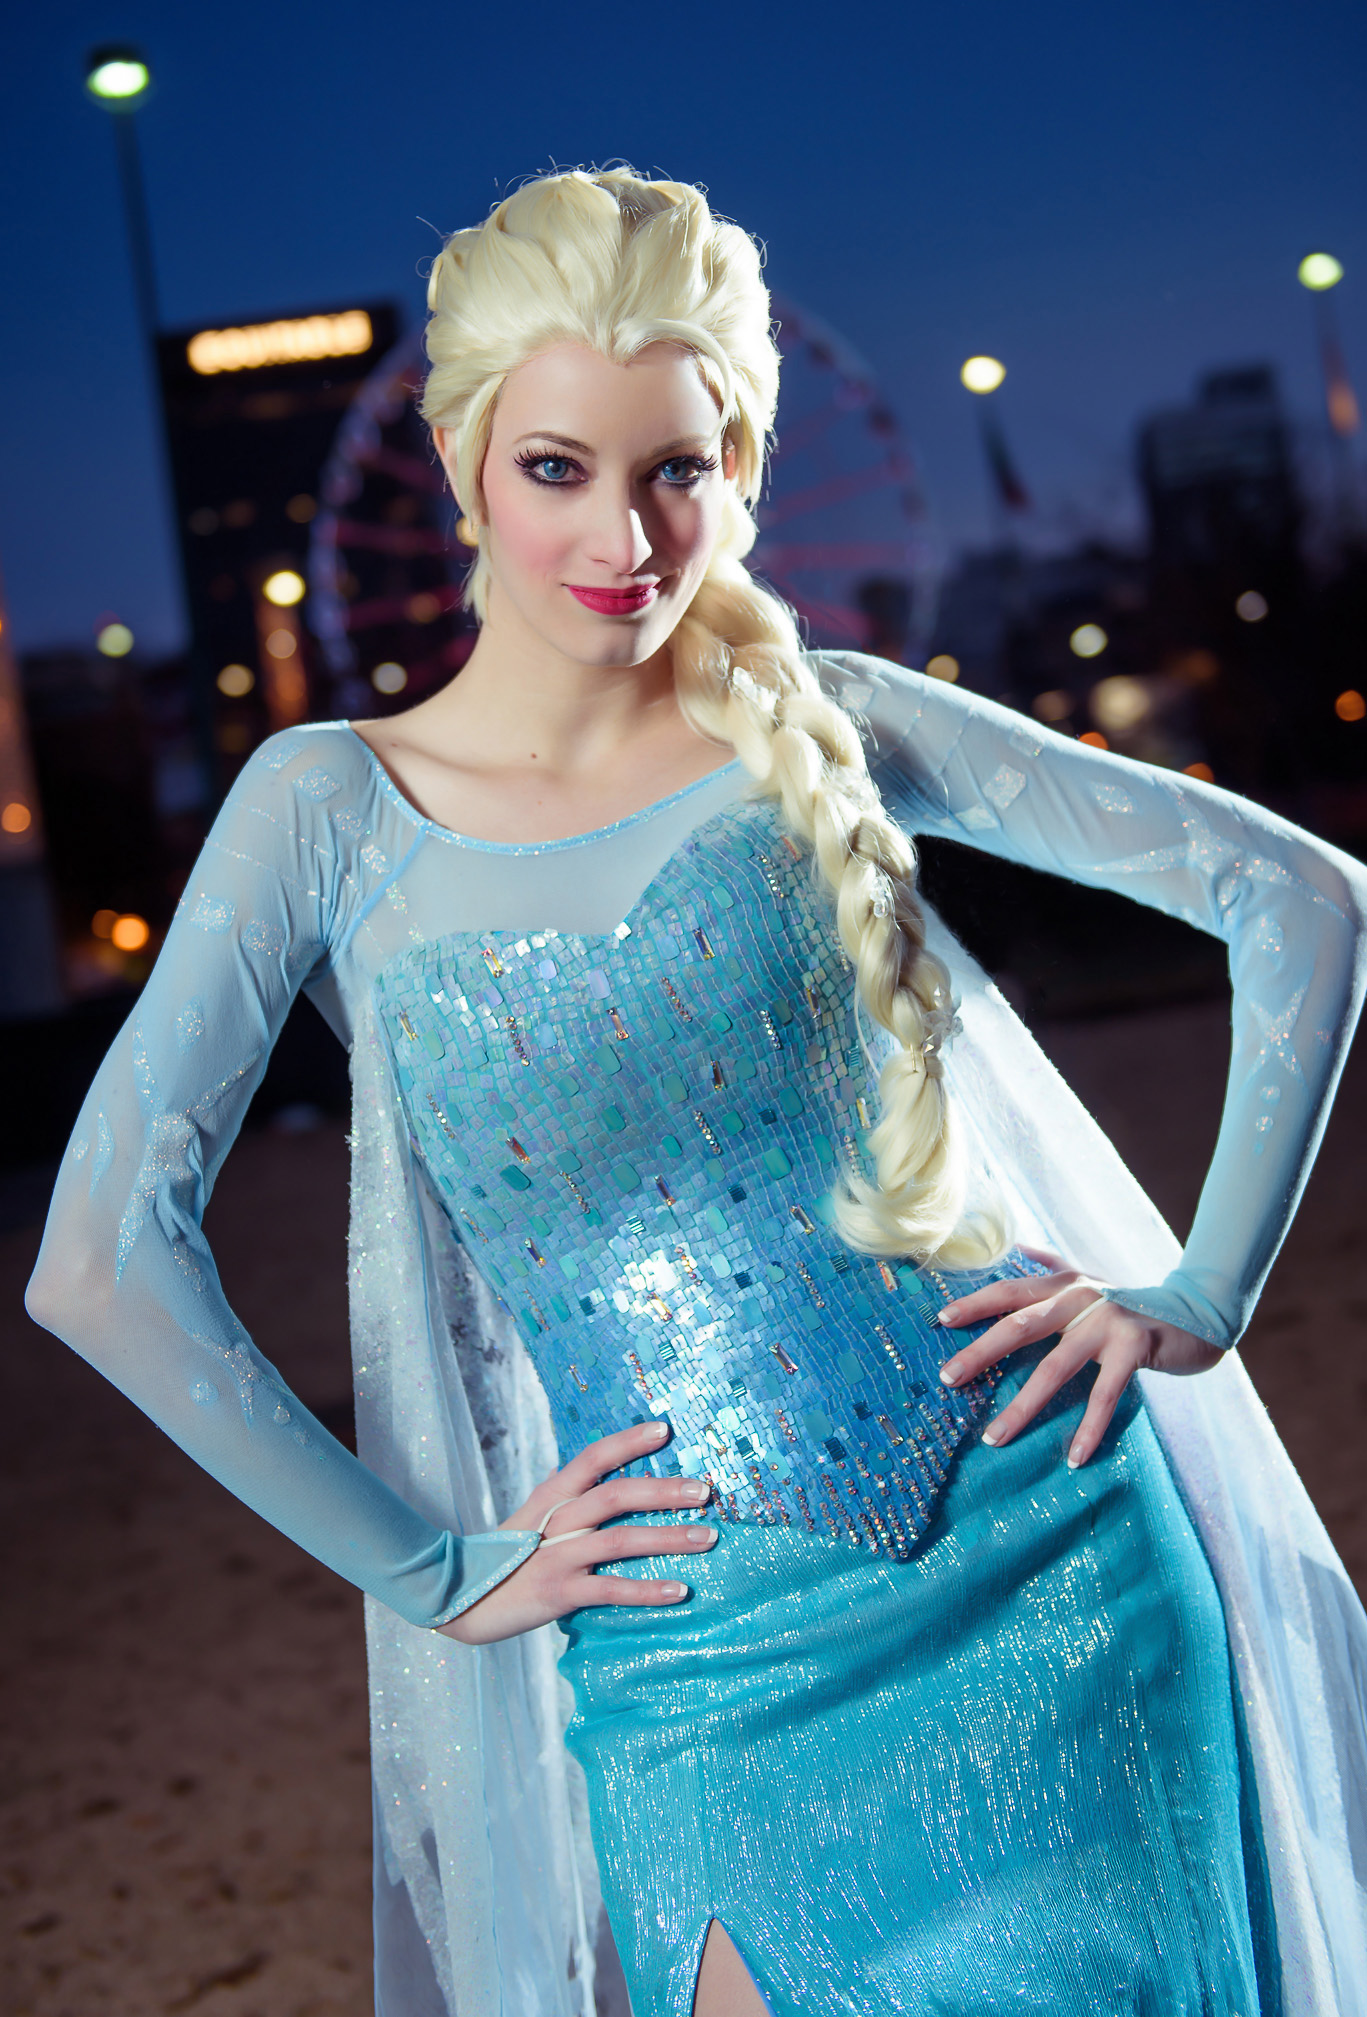 Elsa (Frozen) by Katie | ACParadise.com